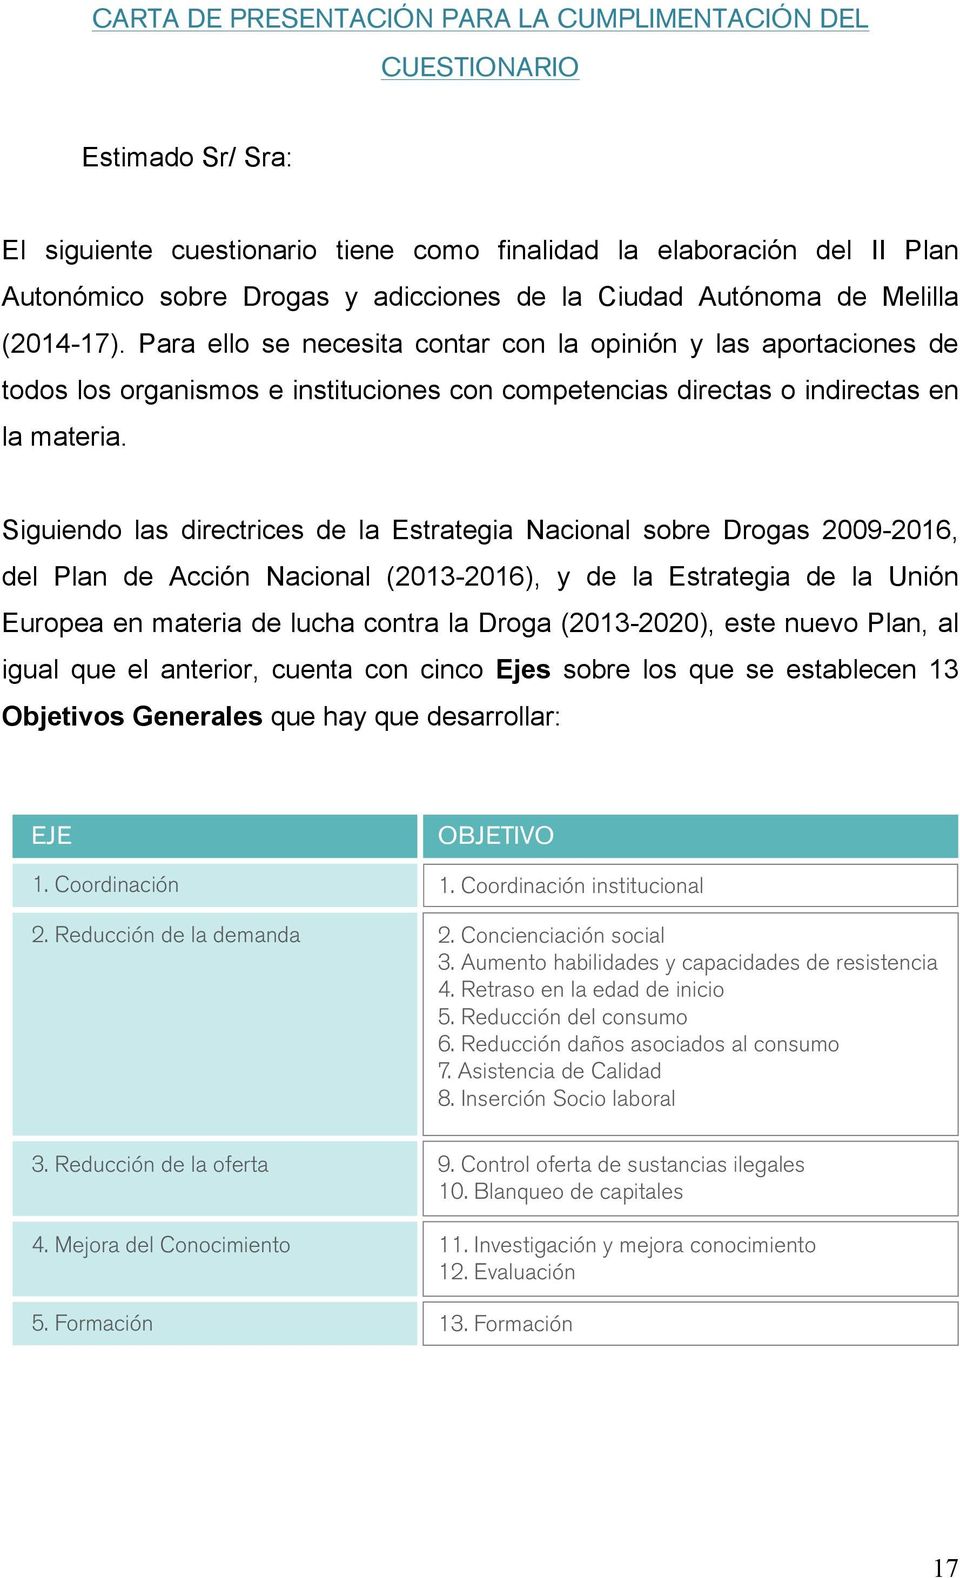 Siguiendo las directrices de la Estrategia Nacional sobre Drogas 2009-2016, del Plan de Acción Nacional (2013-2016), y de la Estrategia de la Unión Europea en materia de lucha contra la Droga